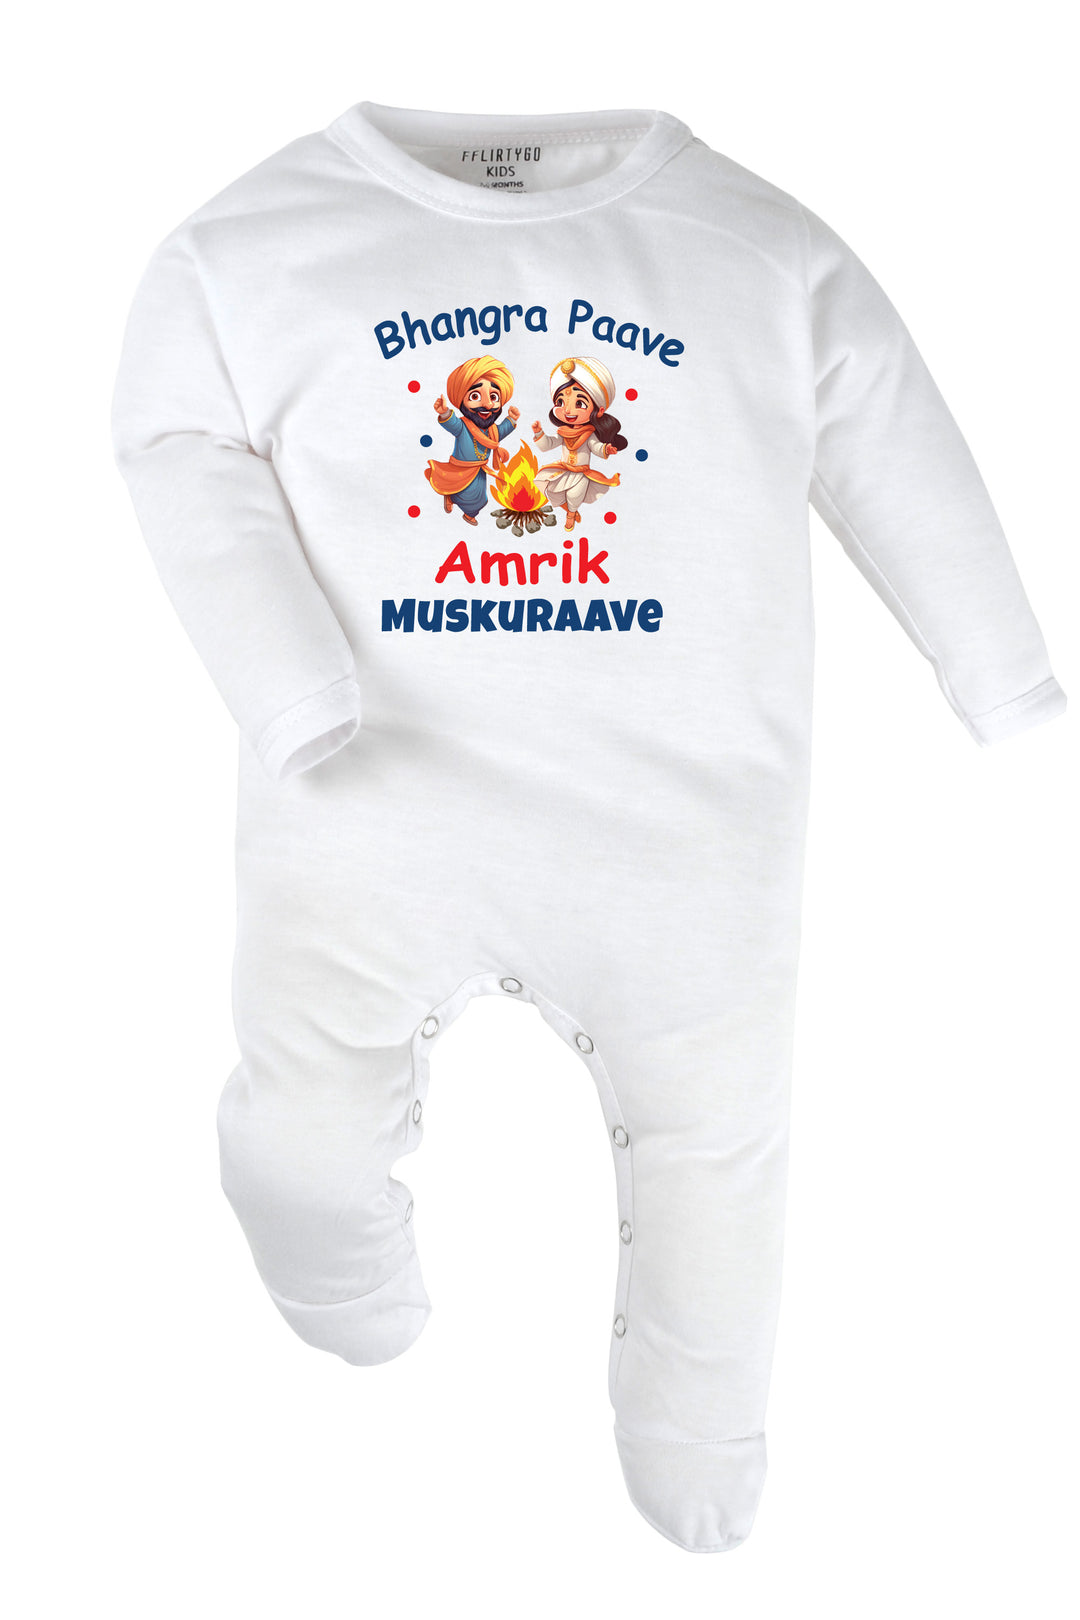 Bhangra Paave Custom Name Baby Romper | Onesies w/ Custom Name